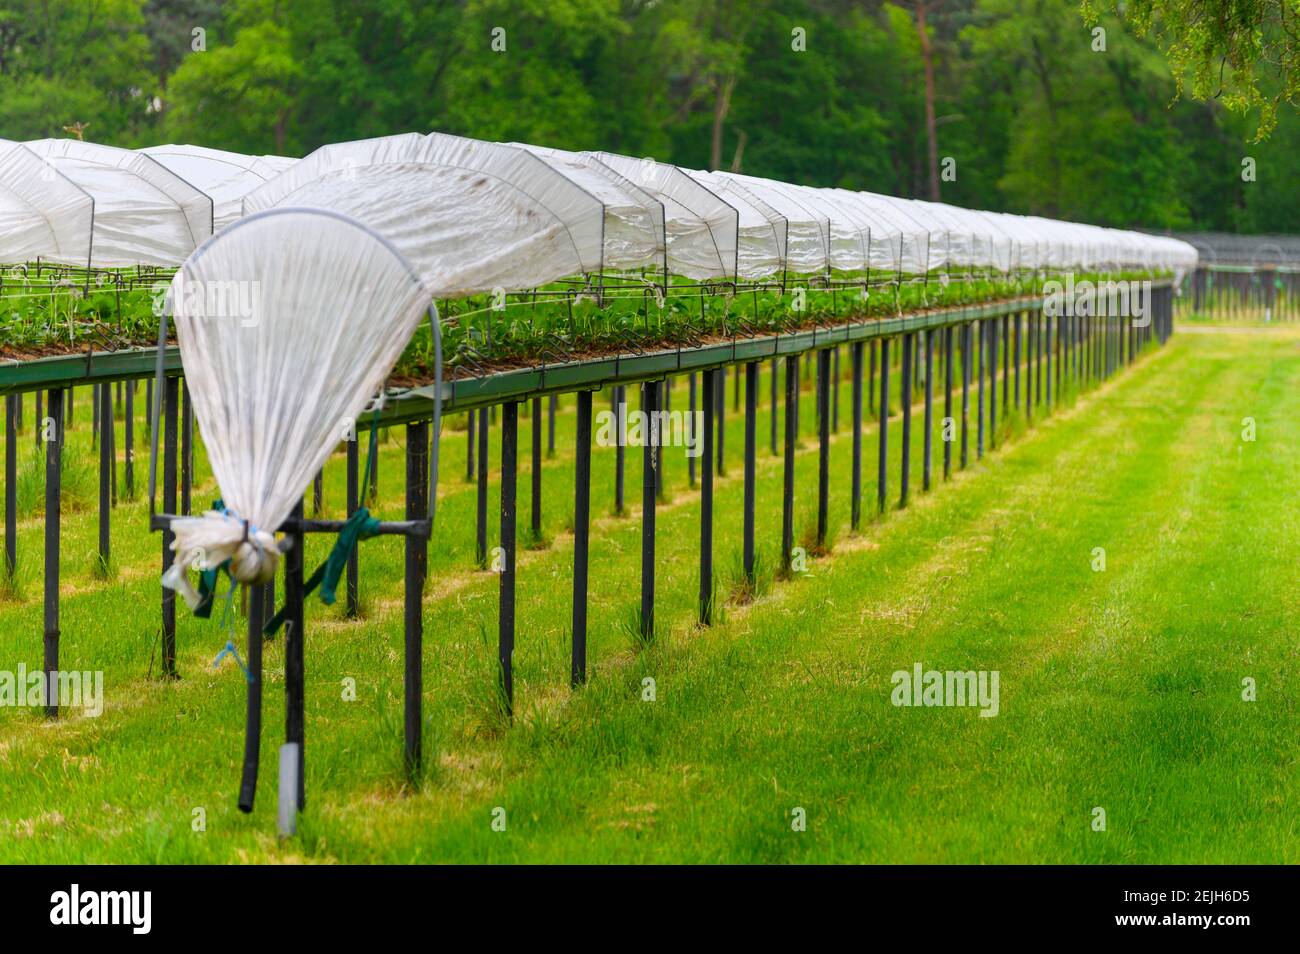 Bioagricoltura nei Paesi Bassi, sistemi di protezione idroponica all'aperto per la coltivazione di piante di fragole con protezione a film placitico Foto Stock